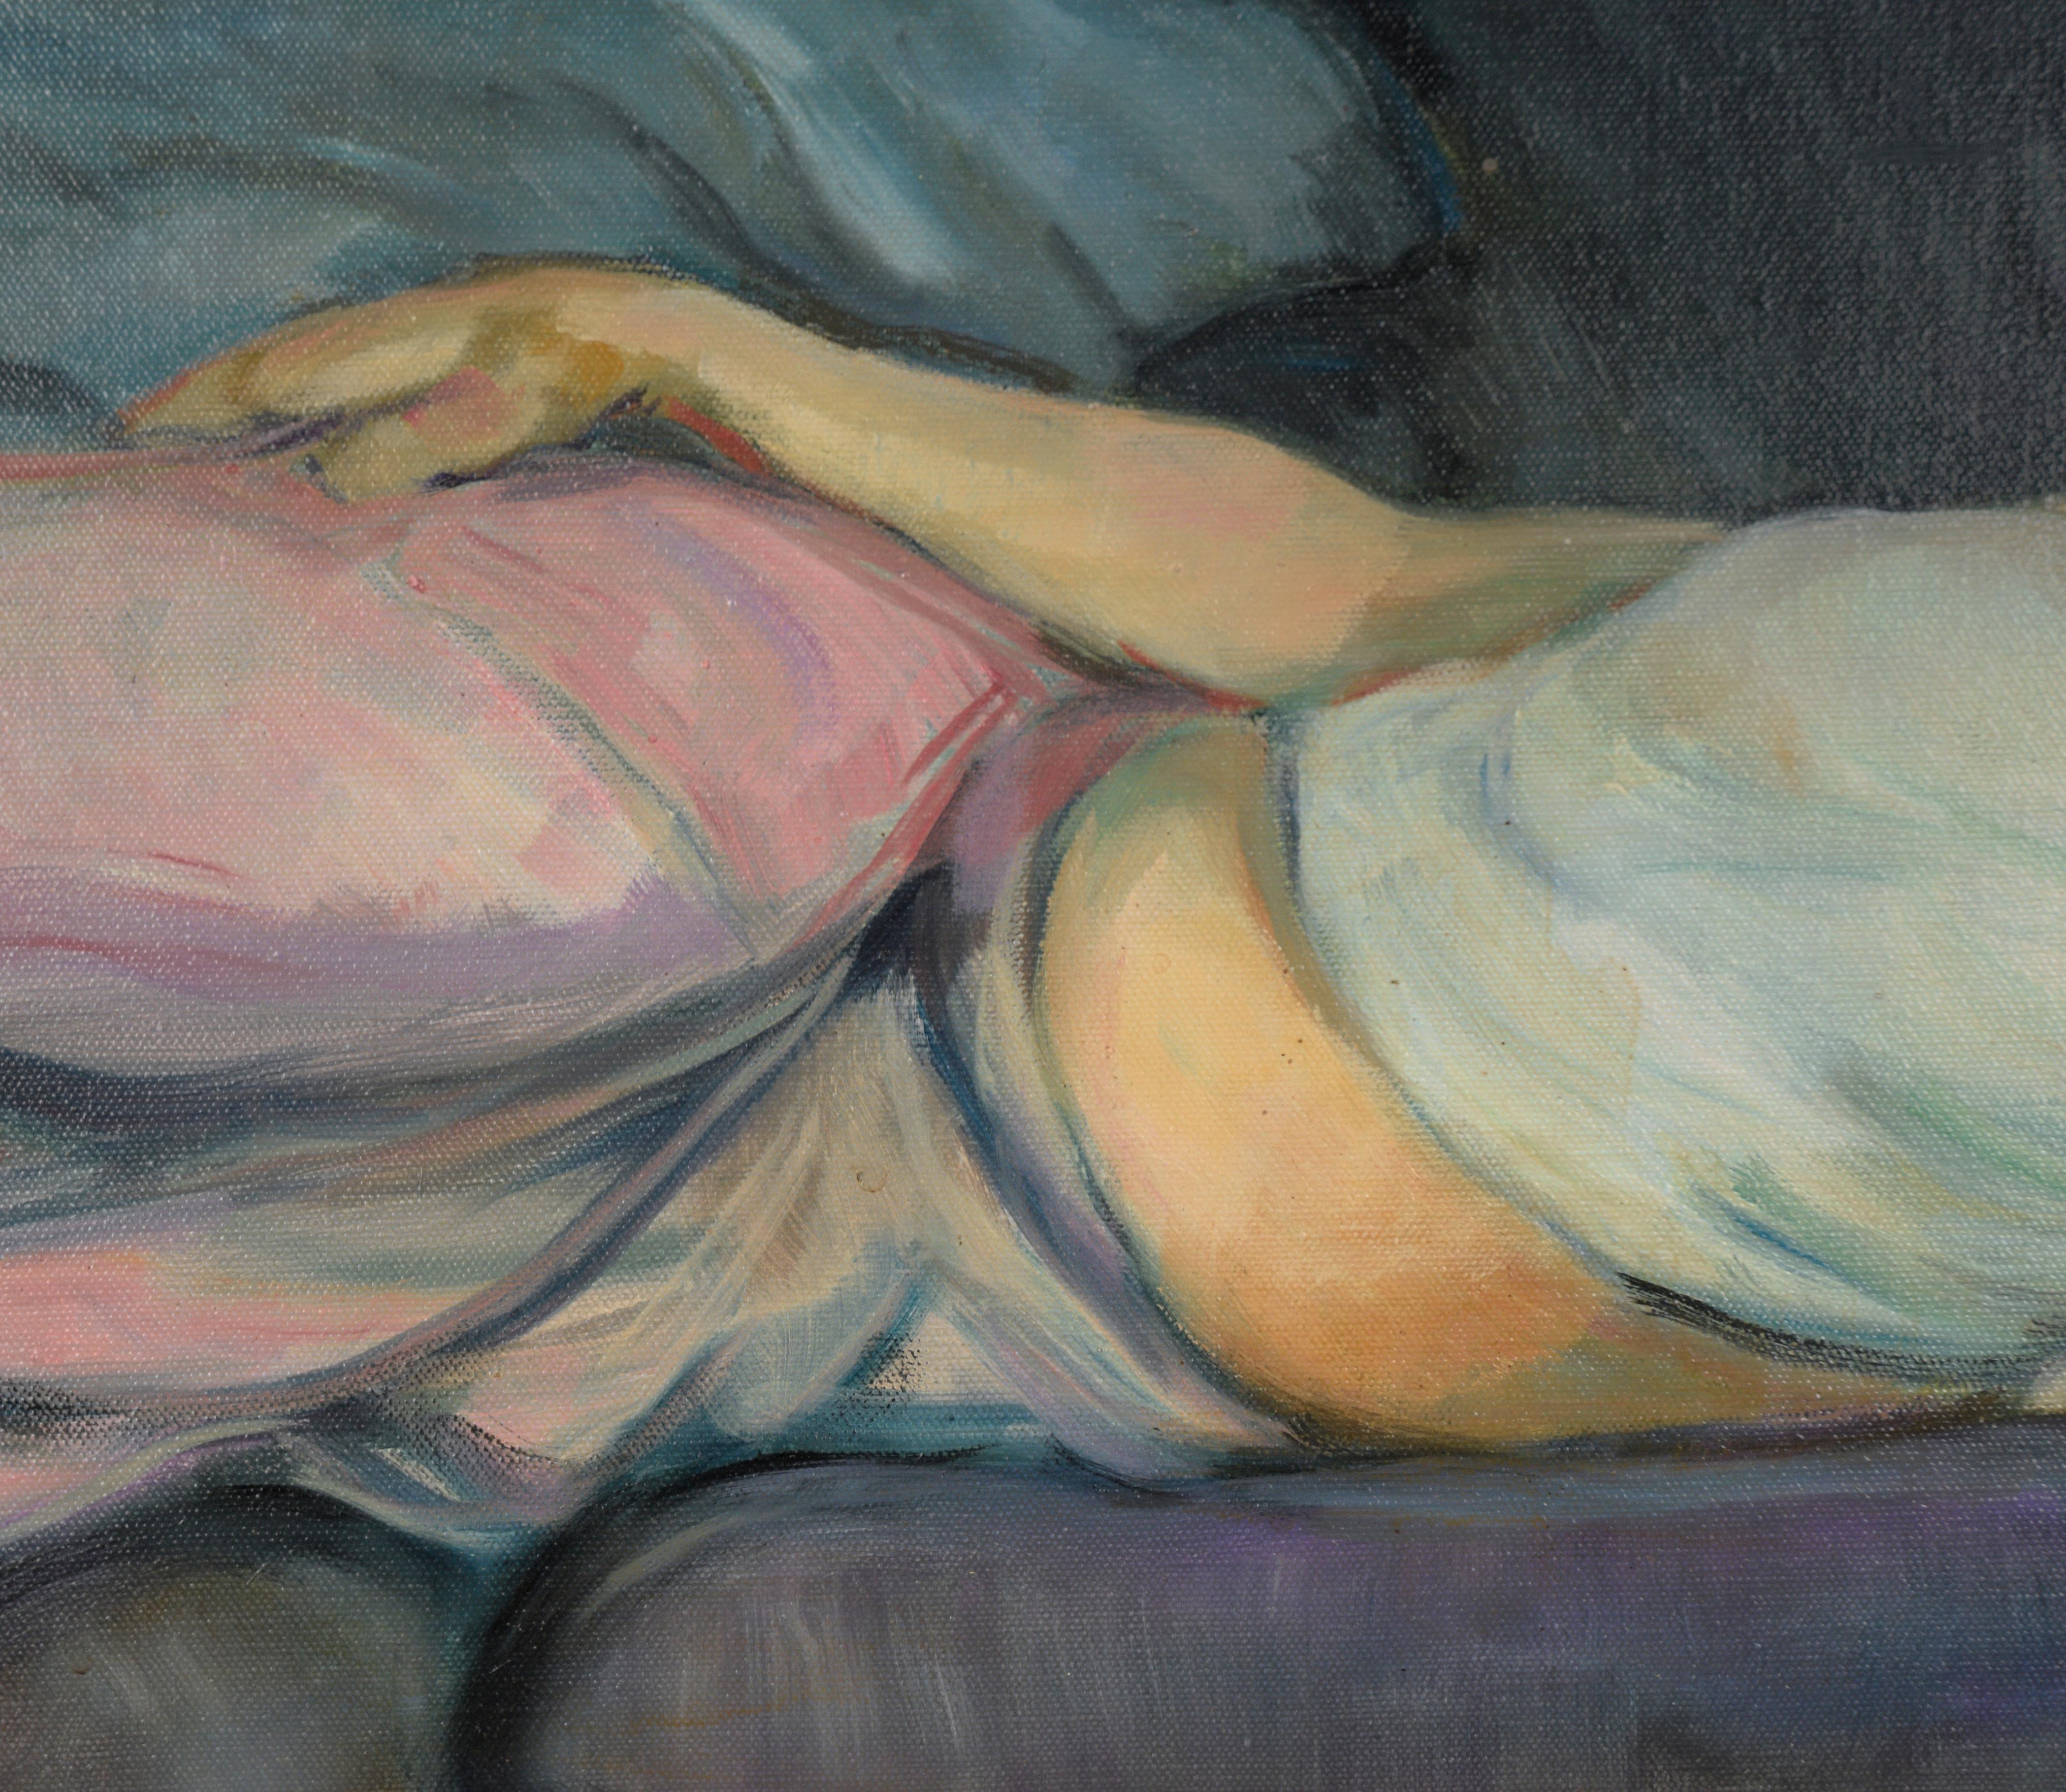 Kräftig koloriertes Porträt einer Frau auf einem Sofa von Nealon A. Mundt (Amerikaner, 1939-2015). Eine Frau liegt auf einem dunkelblauen Sofa, im Hintergrund ist eine rosa Wand zu sehen. Die Frau trägt ein weißes Oberteil und einen rosa Rock und